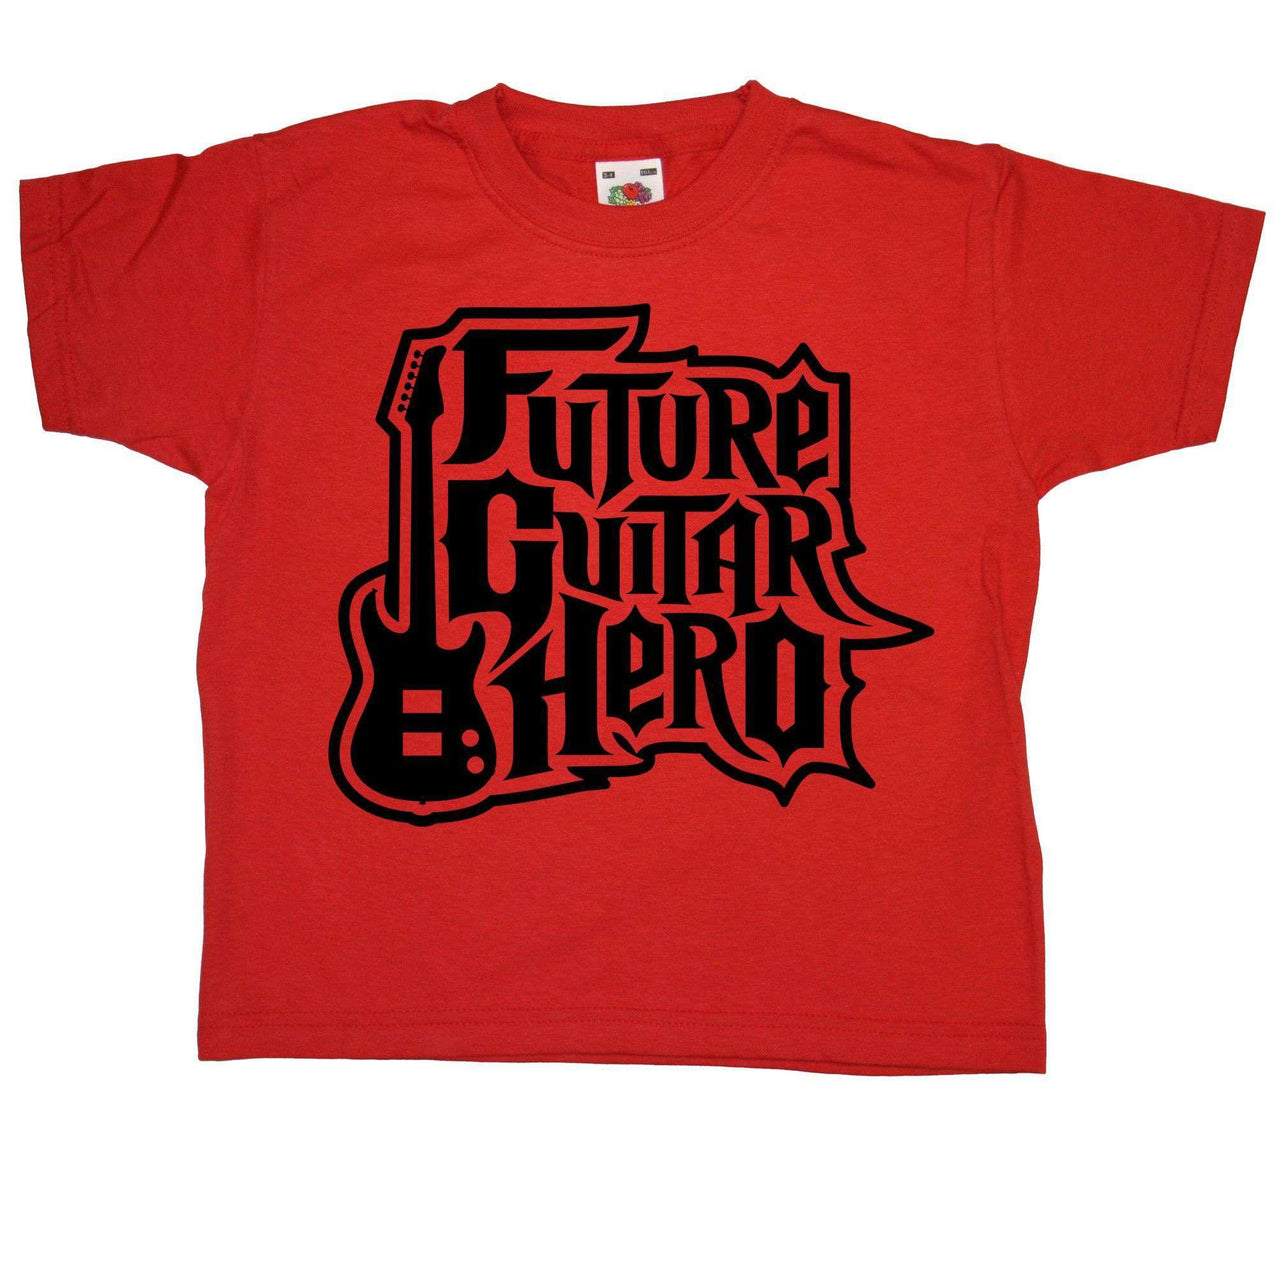 Future Guitar Hero Childrens T-Shirt 8Ball